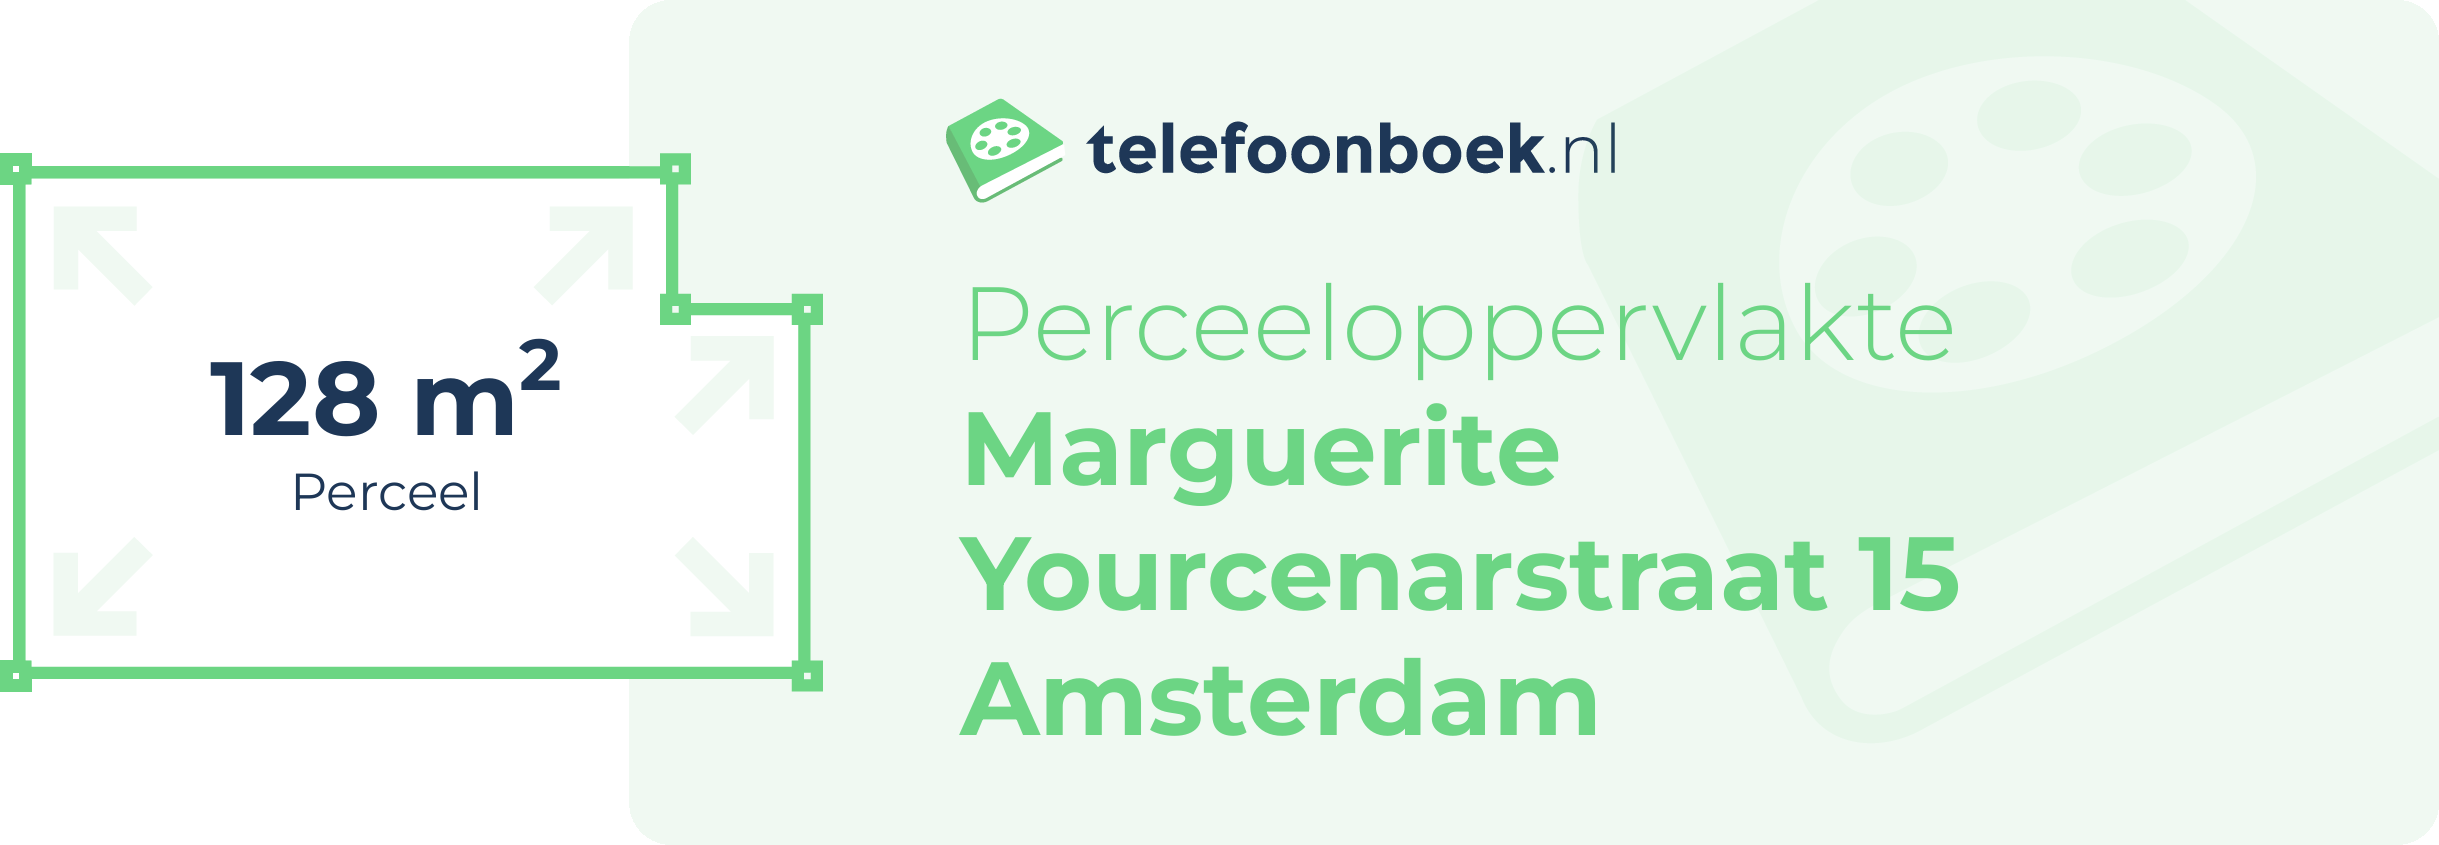 Perceeloppervlakte Marguerite Yourcenarstraat 15 Amsterdam